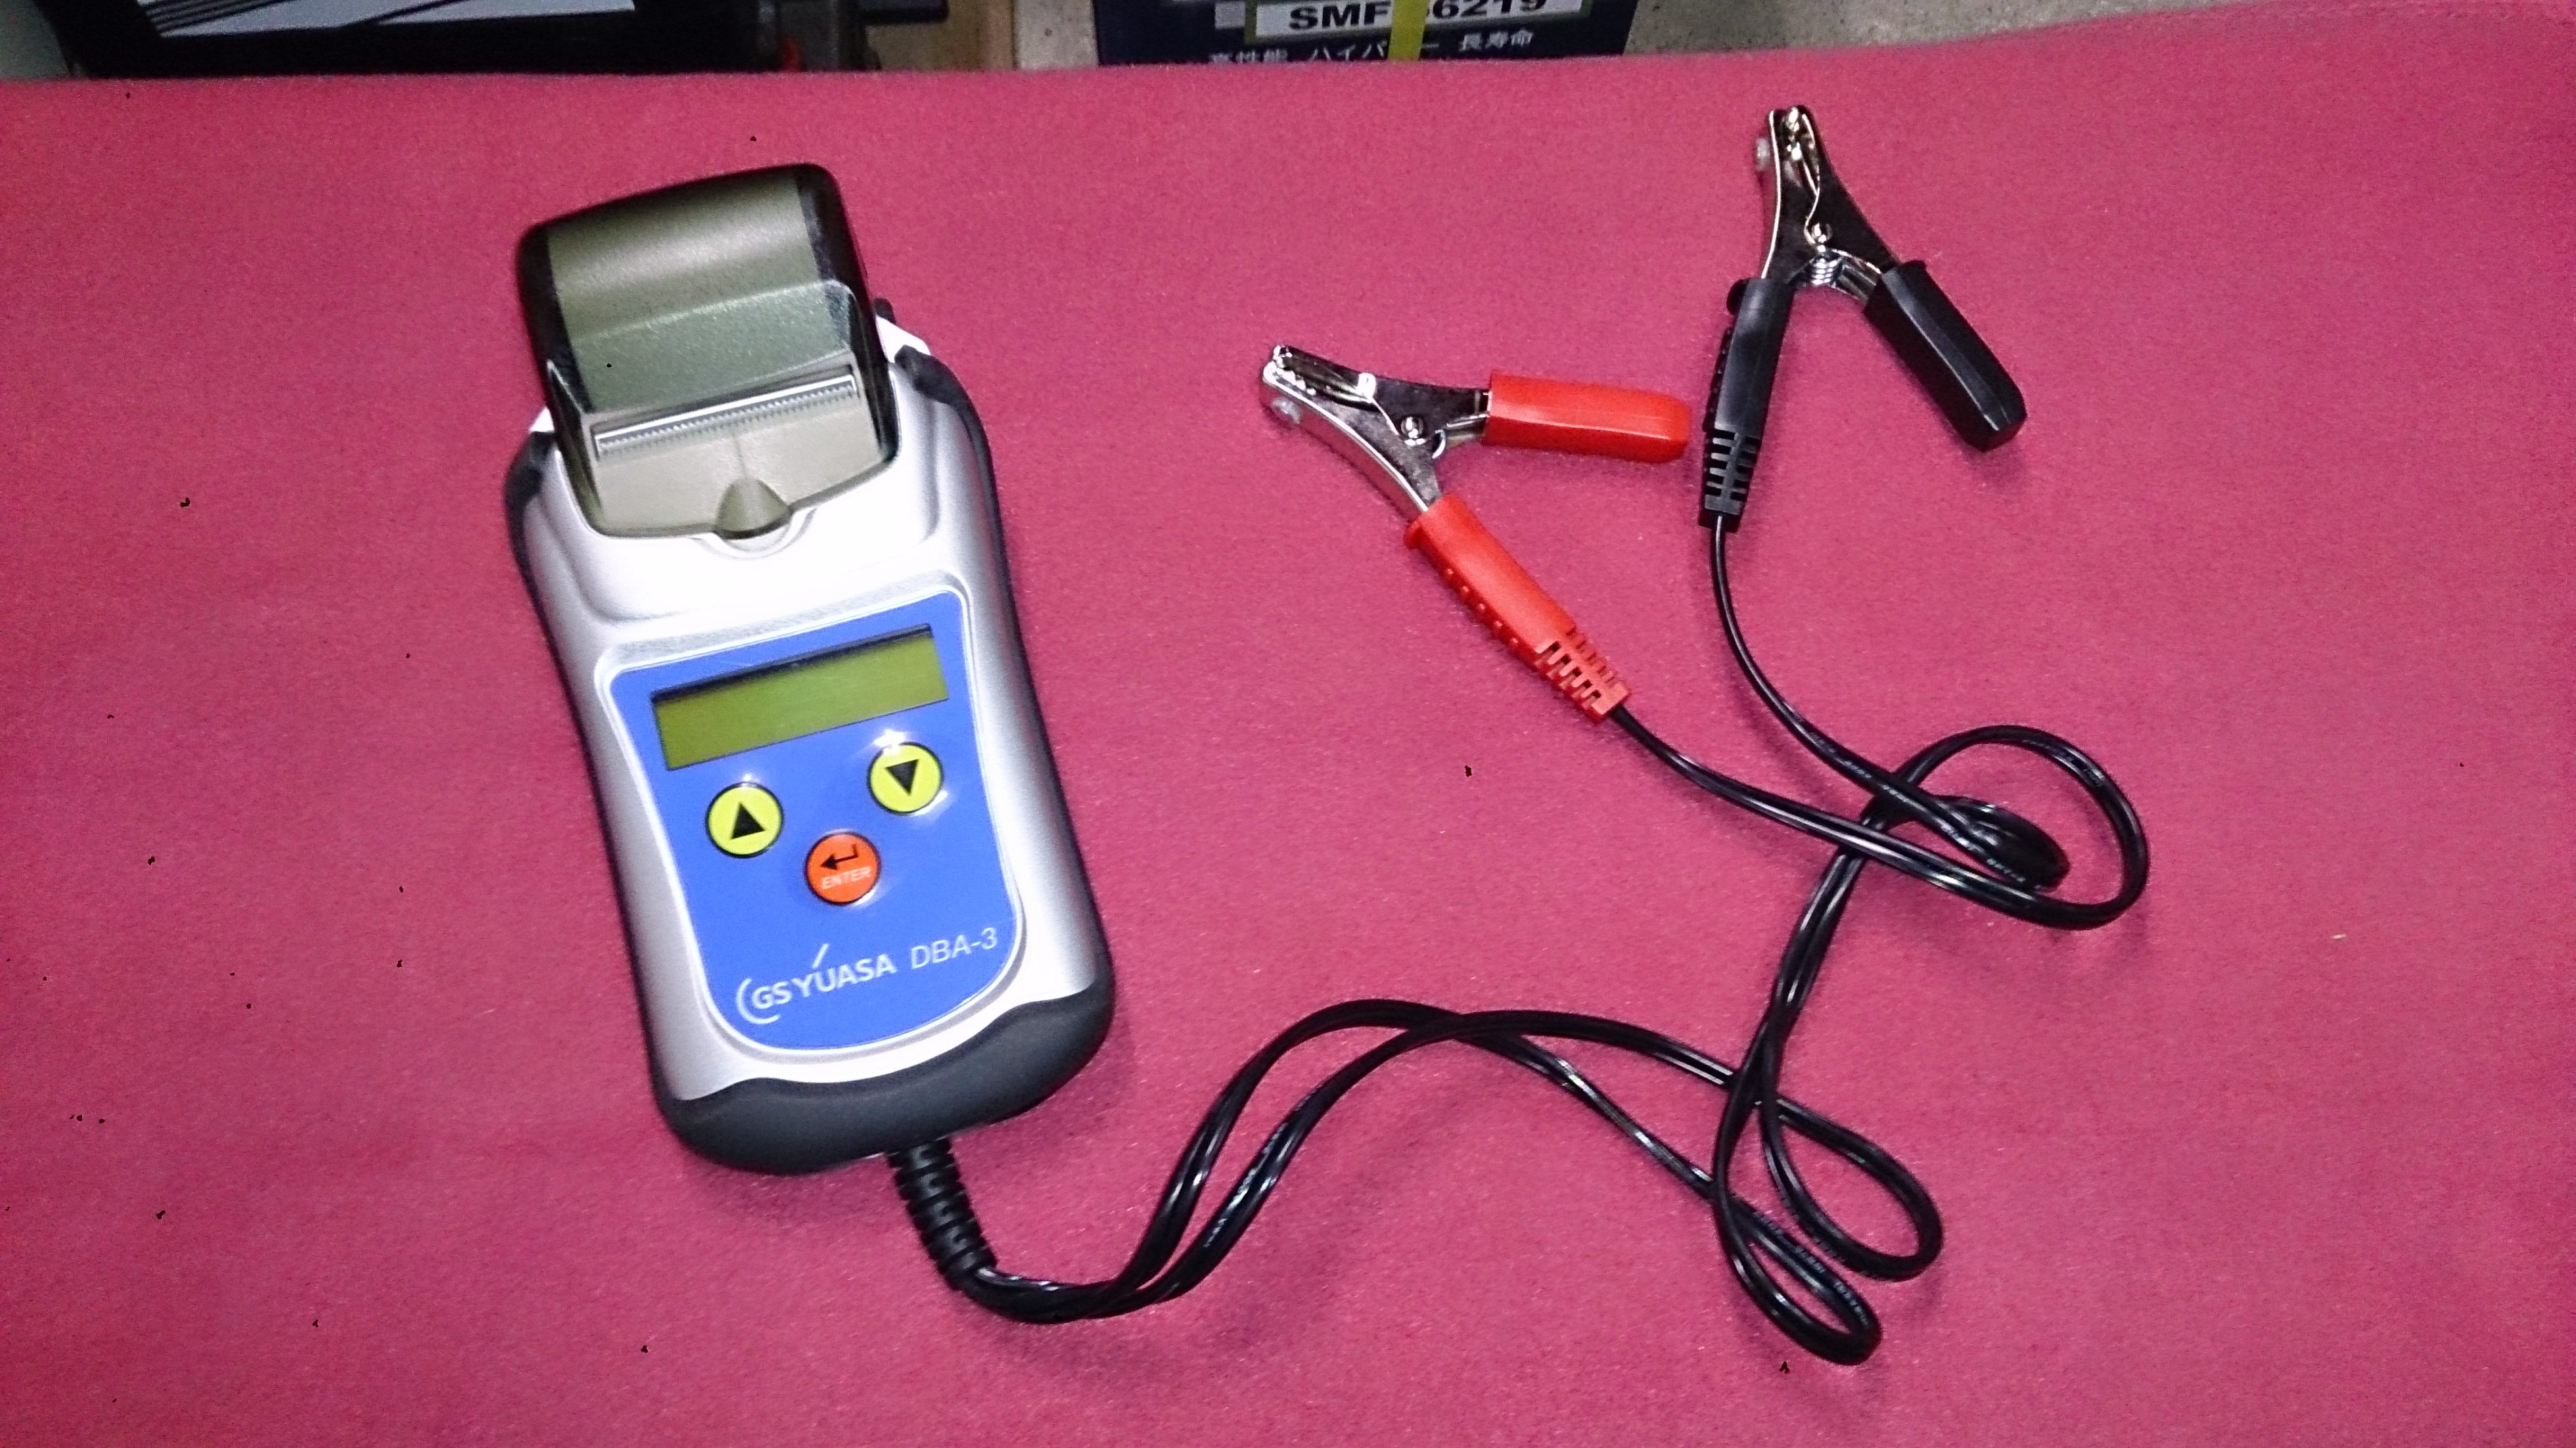 バッテリー診断機器 GSユアサ DBA-3 を購入しました - 自動車バッテリー バスケスコーポレーションの店長ブログ